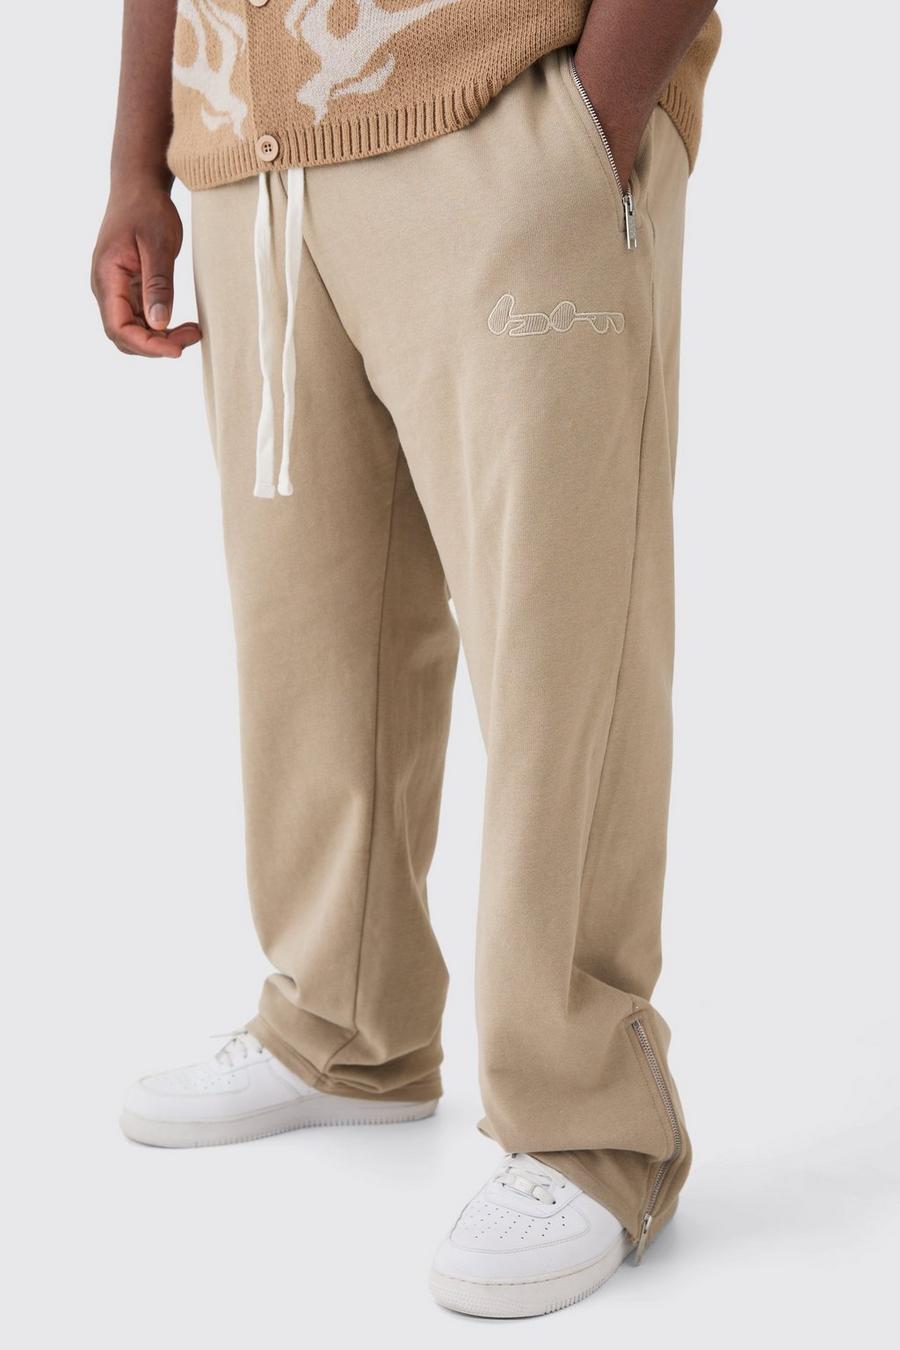 Pantalón deportivo Plus oversize de tela rizo con aplique y cremallera, Pale grey